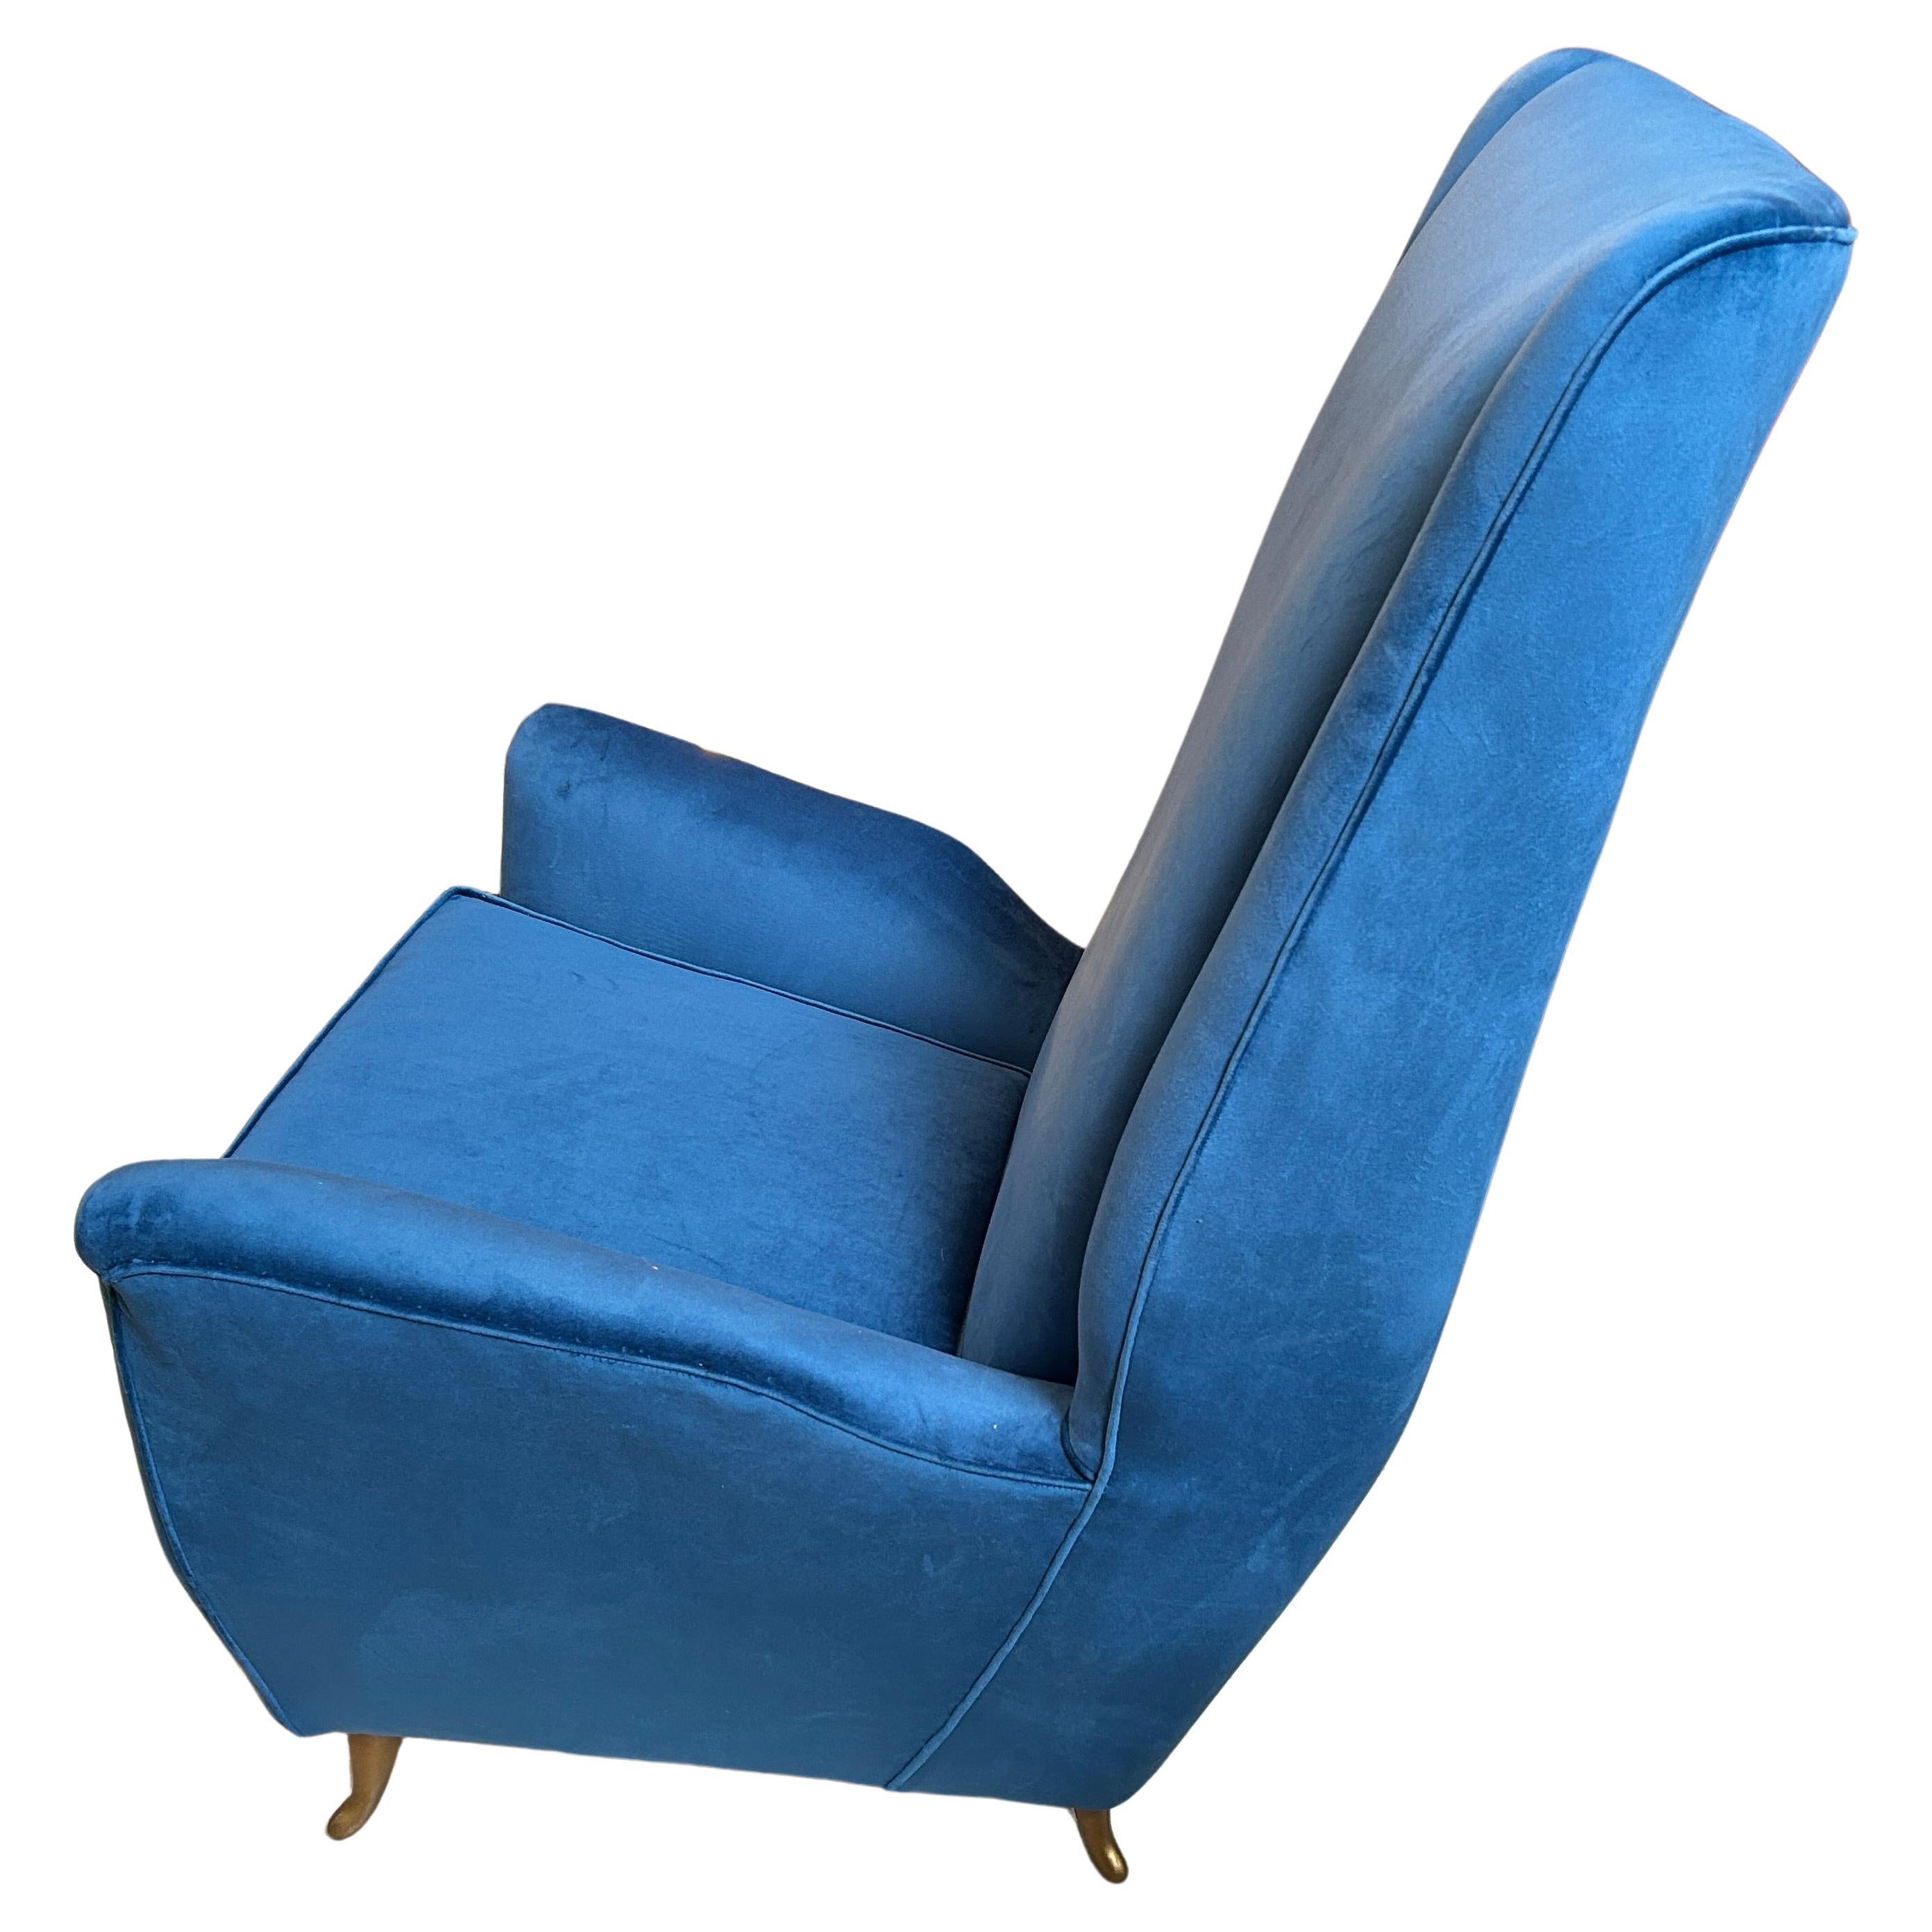 Die Mid-Century Modern Hochlehnsessel Modell 408 wurden in den 1950er Jahren von dem bekannten italienischen Architekten und Designer Gio Ponti für das Möbelunternehmen Isa Bergamo entworfen. Diese Sessel zeichnen sich durch ein einzigartiges und